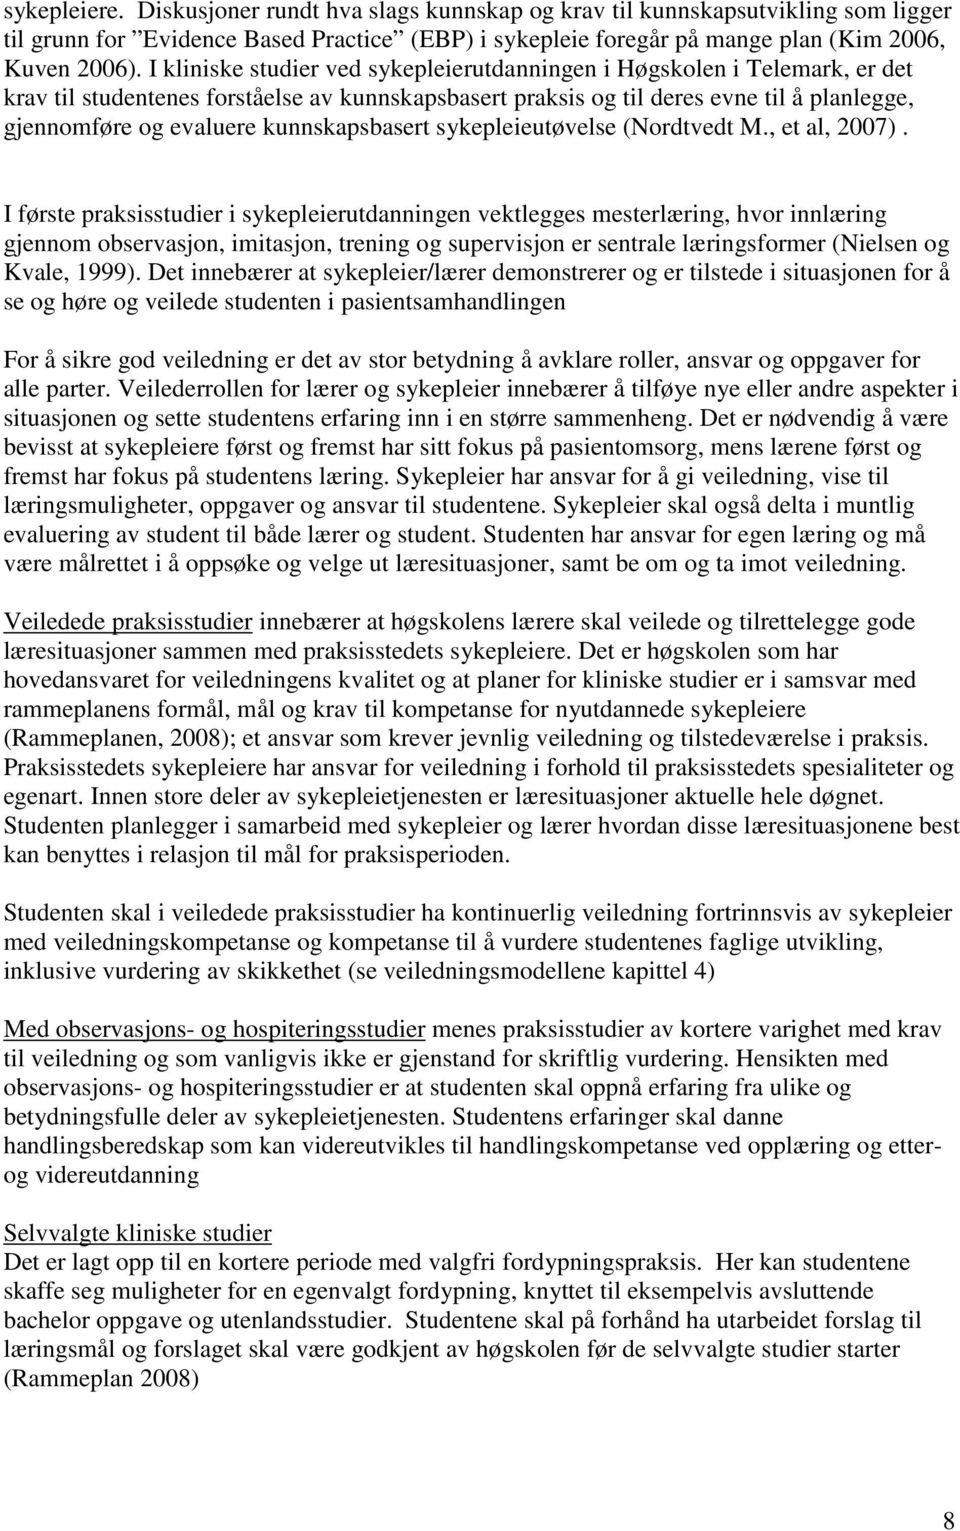 kunnskapsbasert sykepleieutøvelse (Nordtvedt M., et al, 2007).